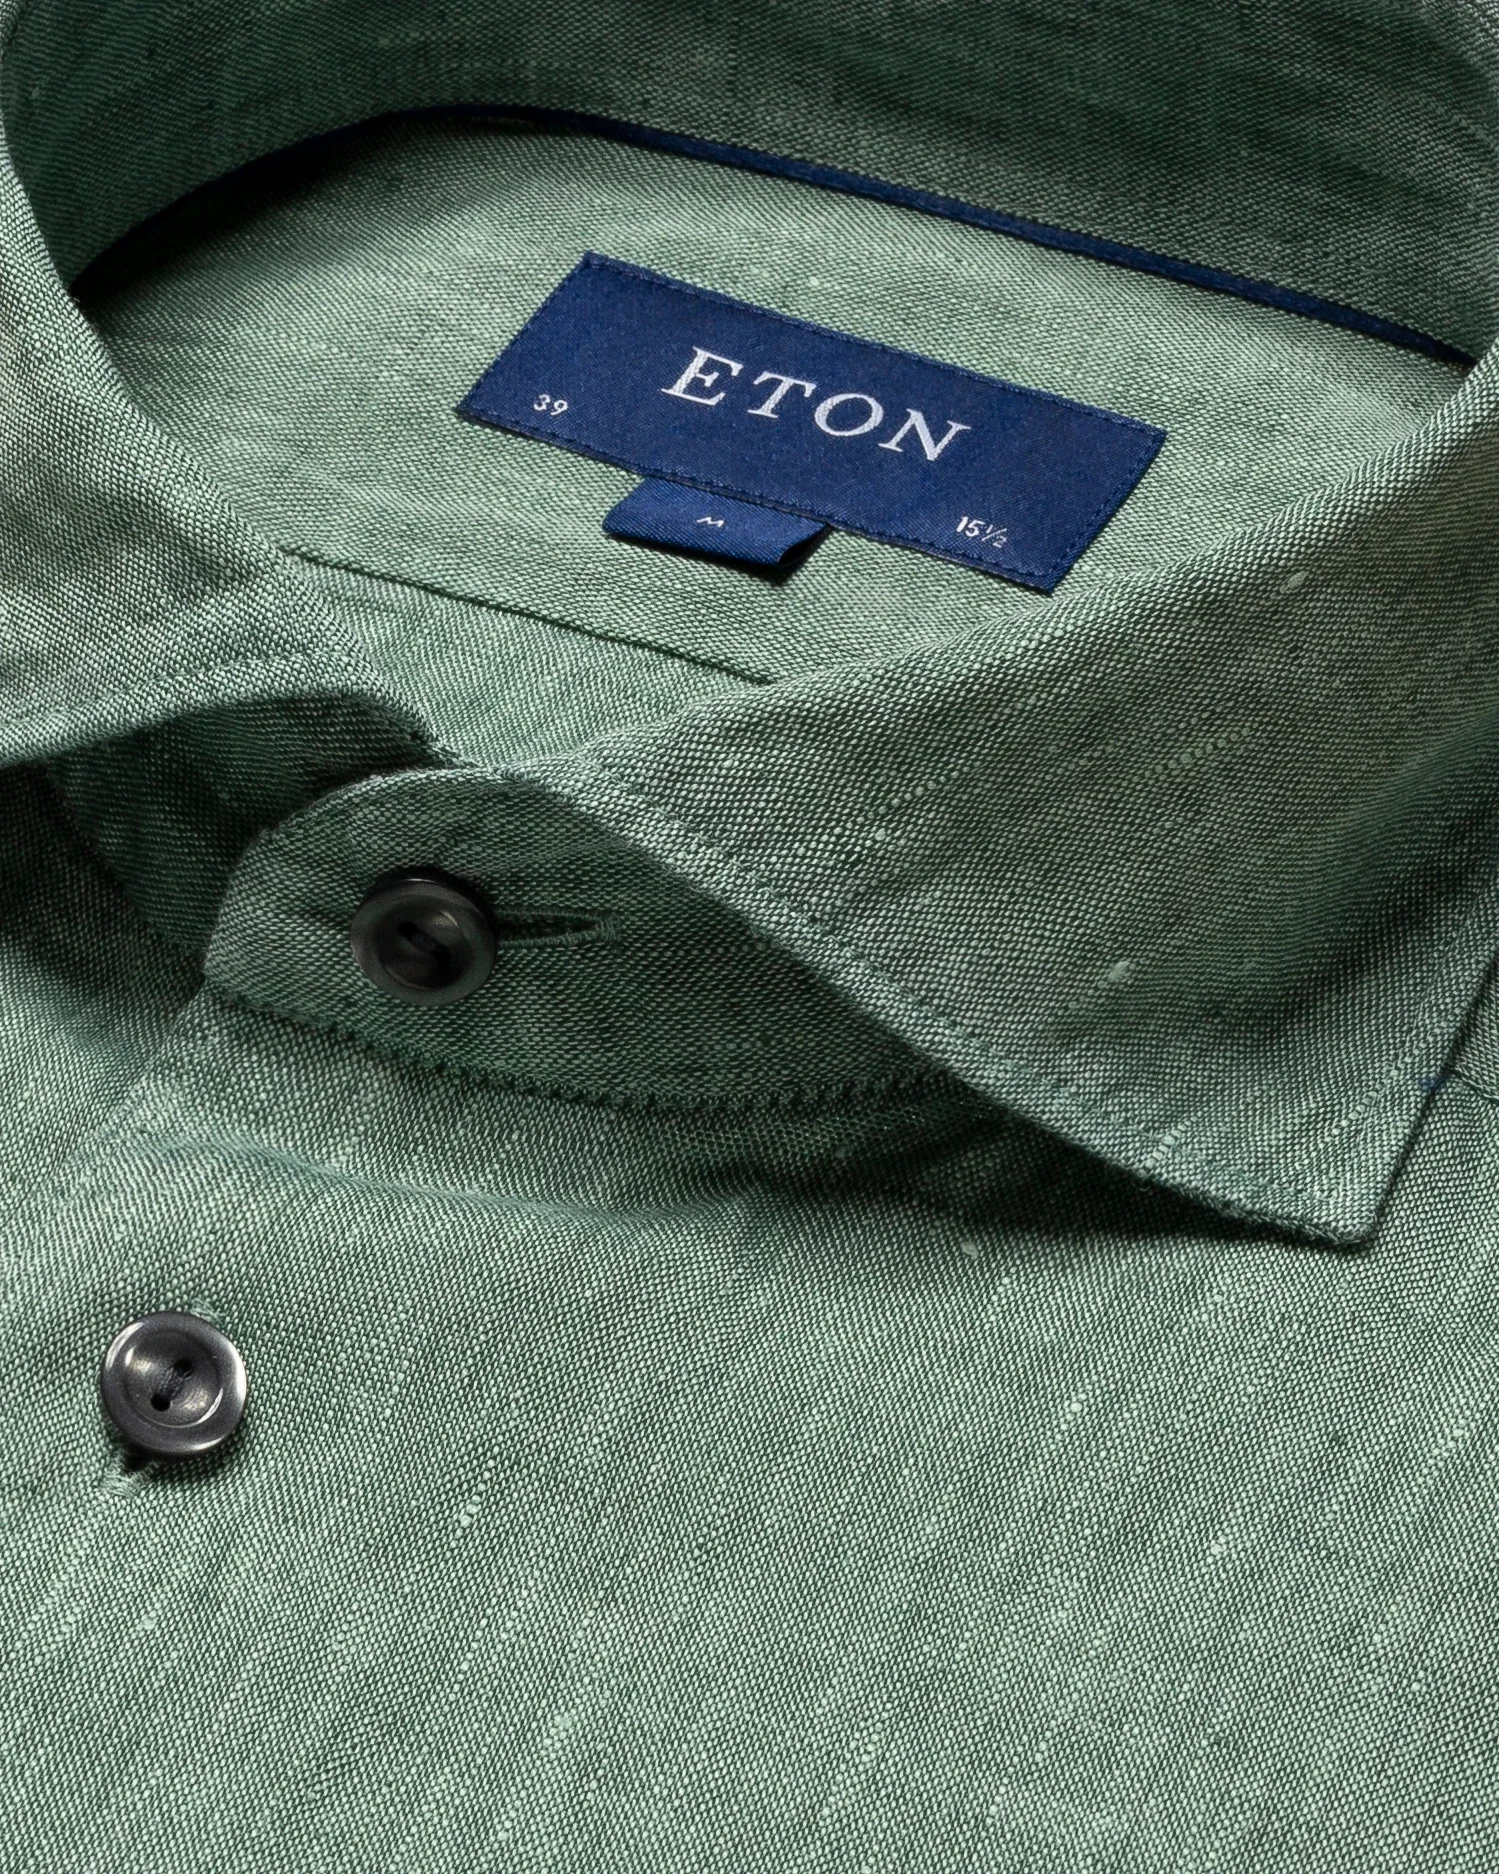 Eton - dark green linen polo shirt